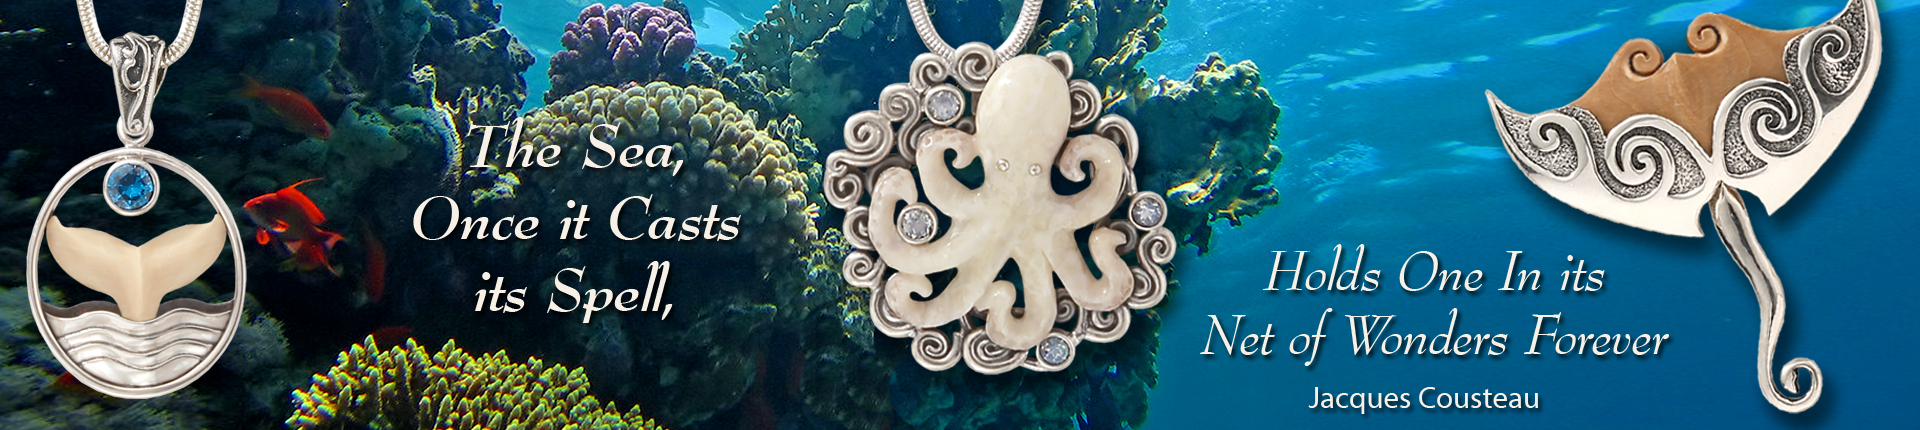 Zealandia oceans jewelry, octopus pendant